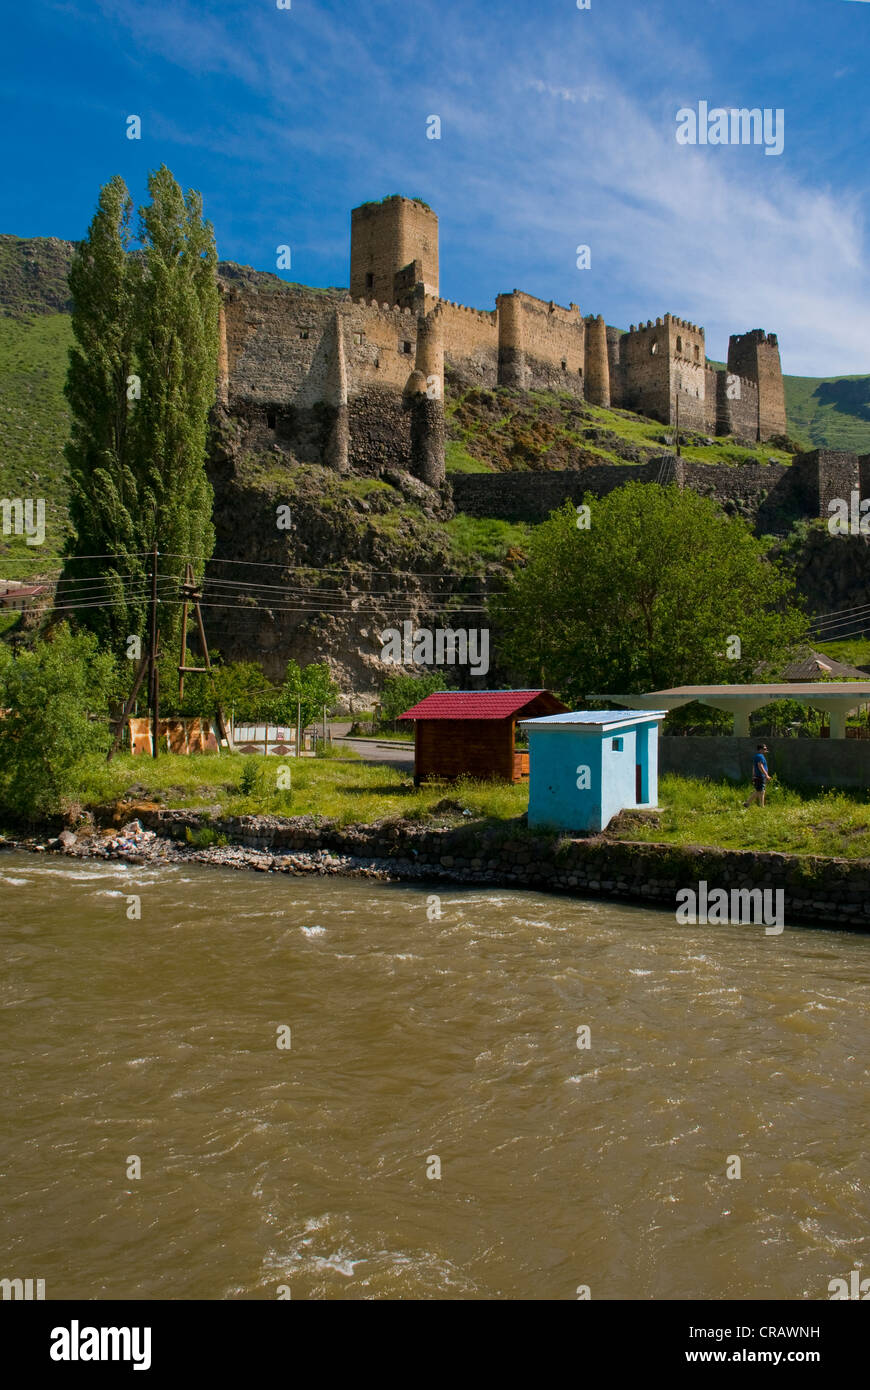 La forteresse de Khertvisi, Géorgie, Caucase, Moyen-Orient Banque D'Images